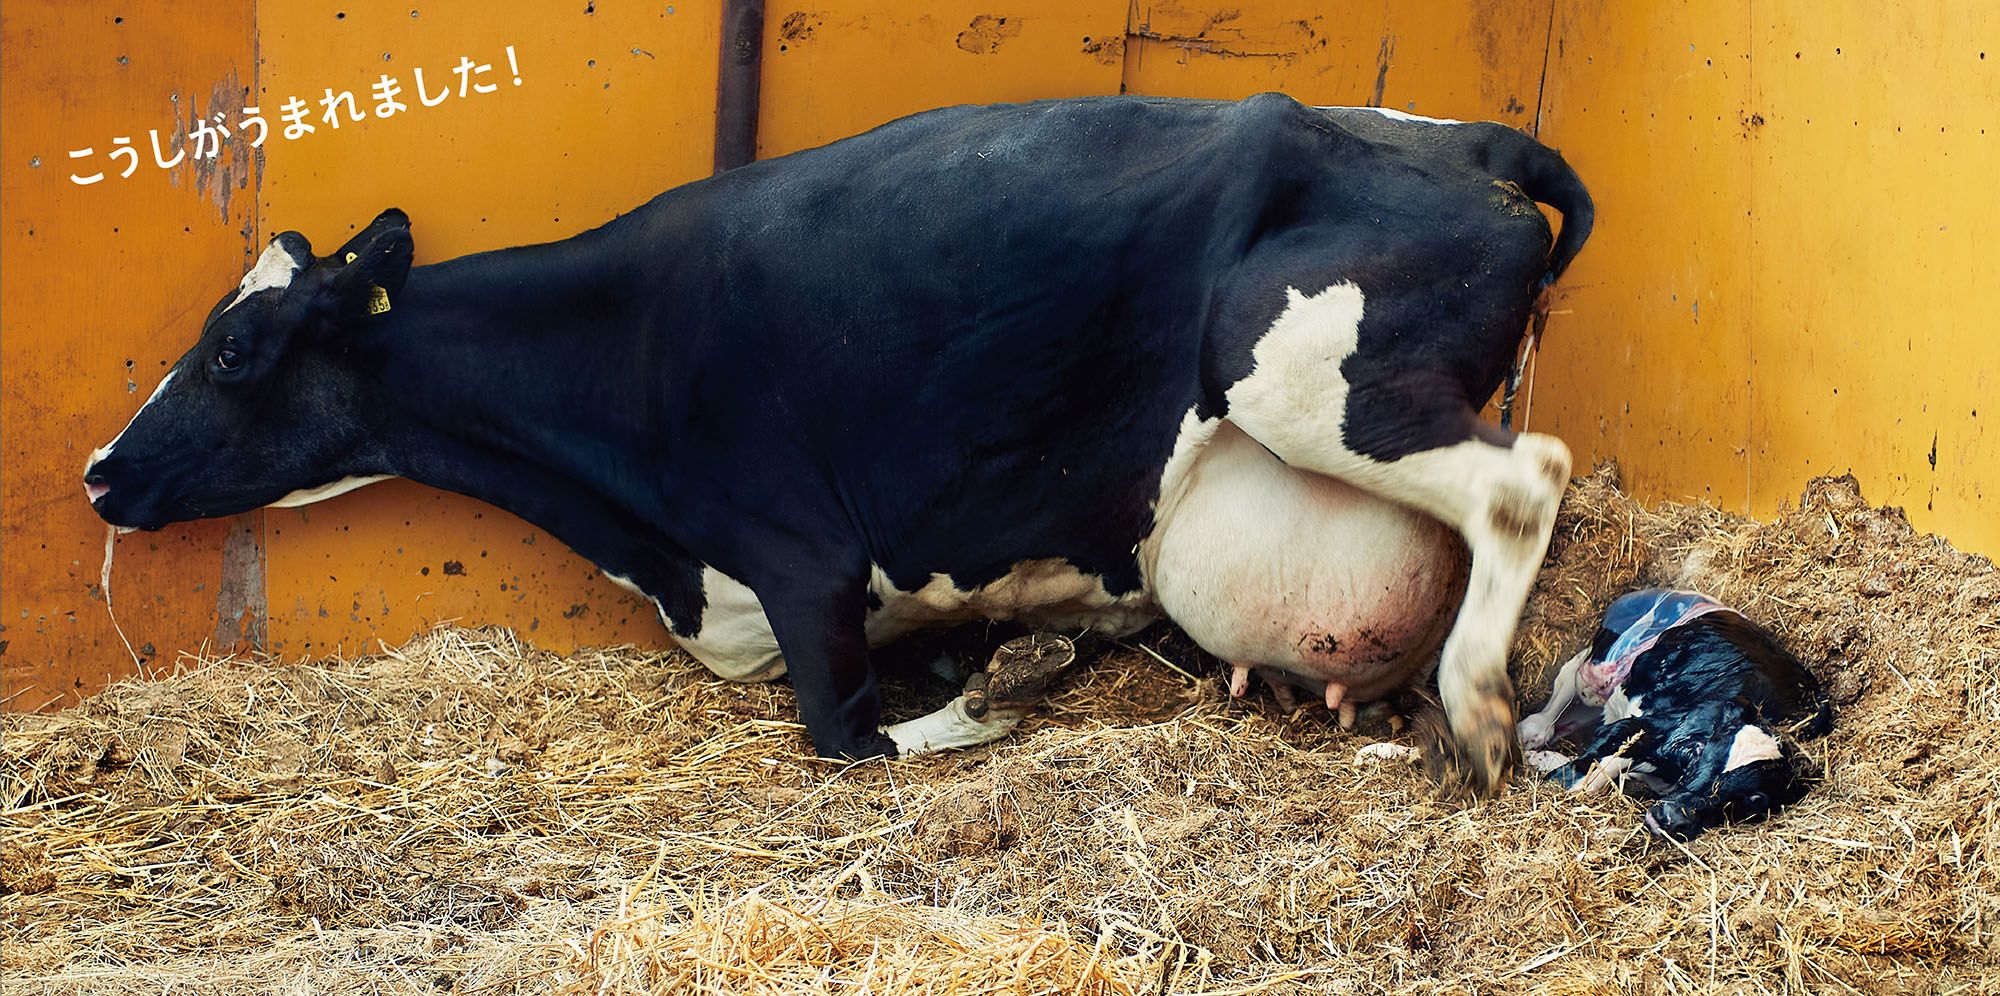 キッチンミノルさんが徹夜で撮影した、牛の出産の場面　©キッチンミノル（白泉社）